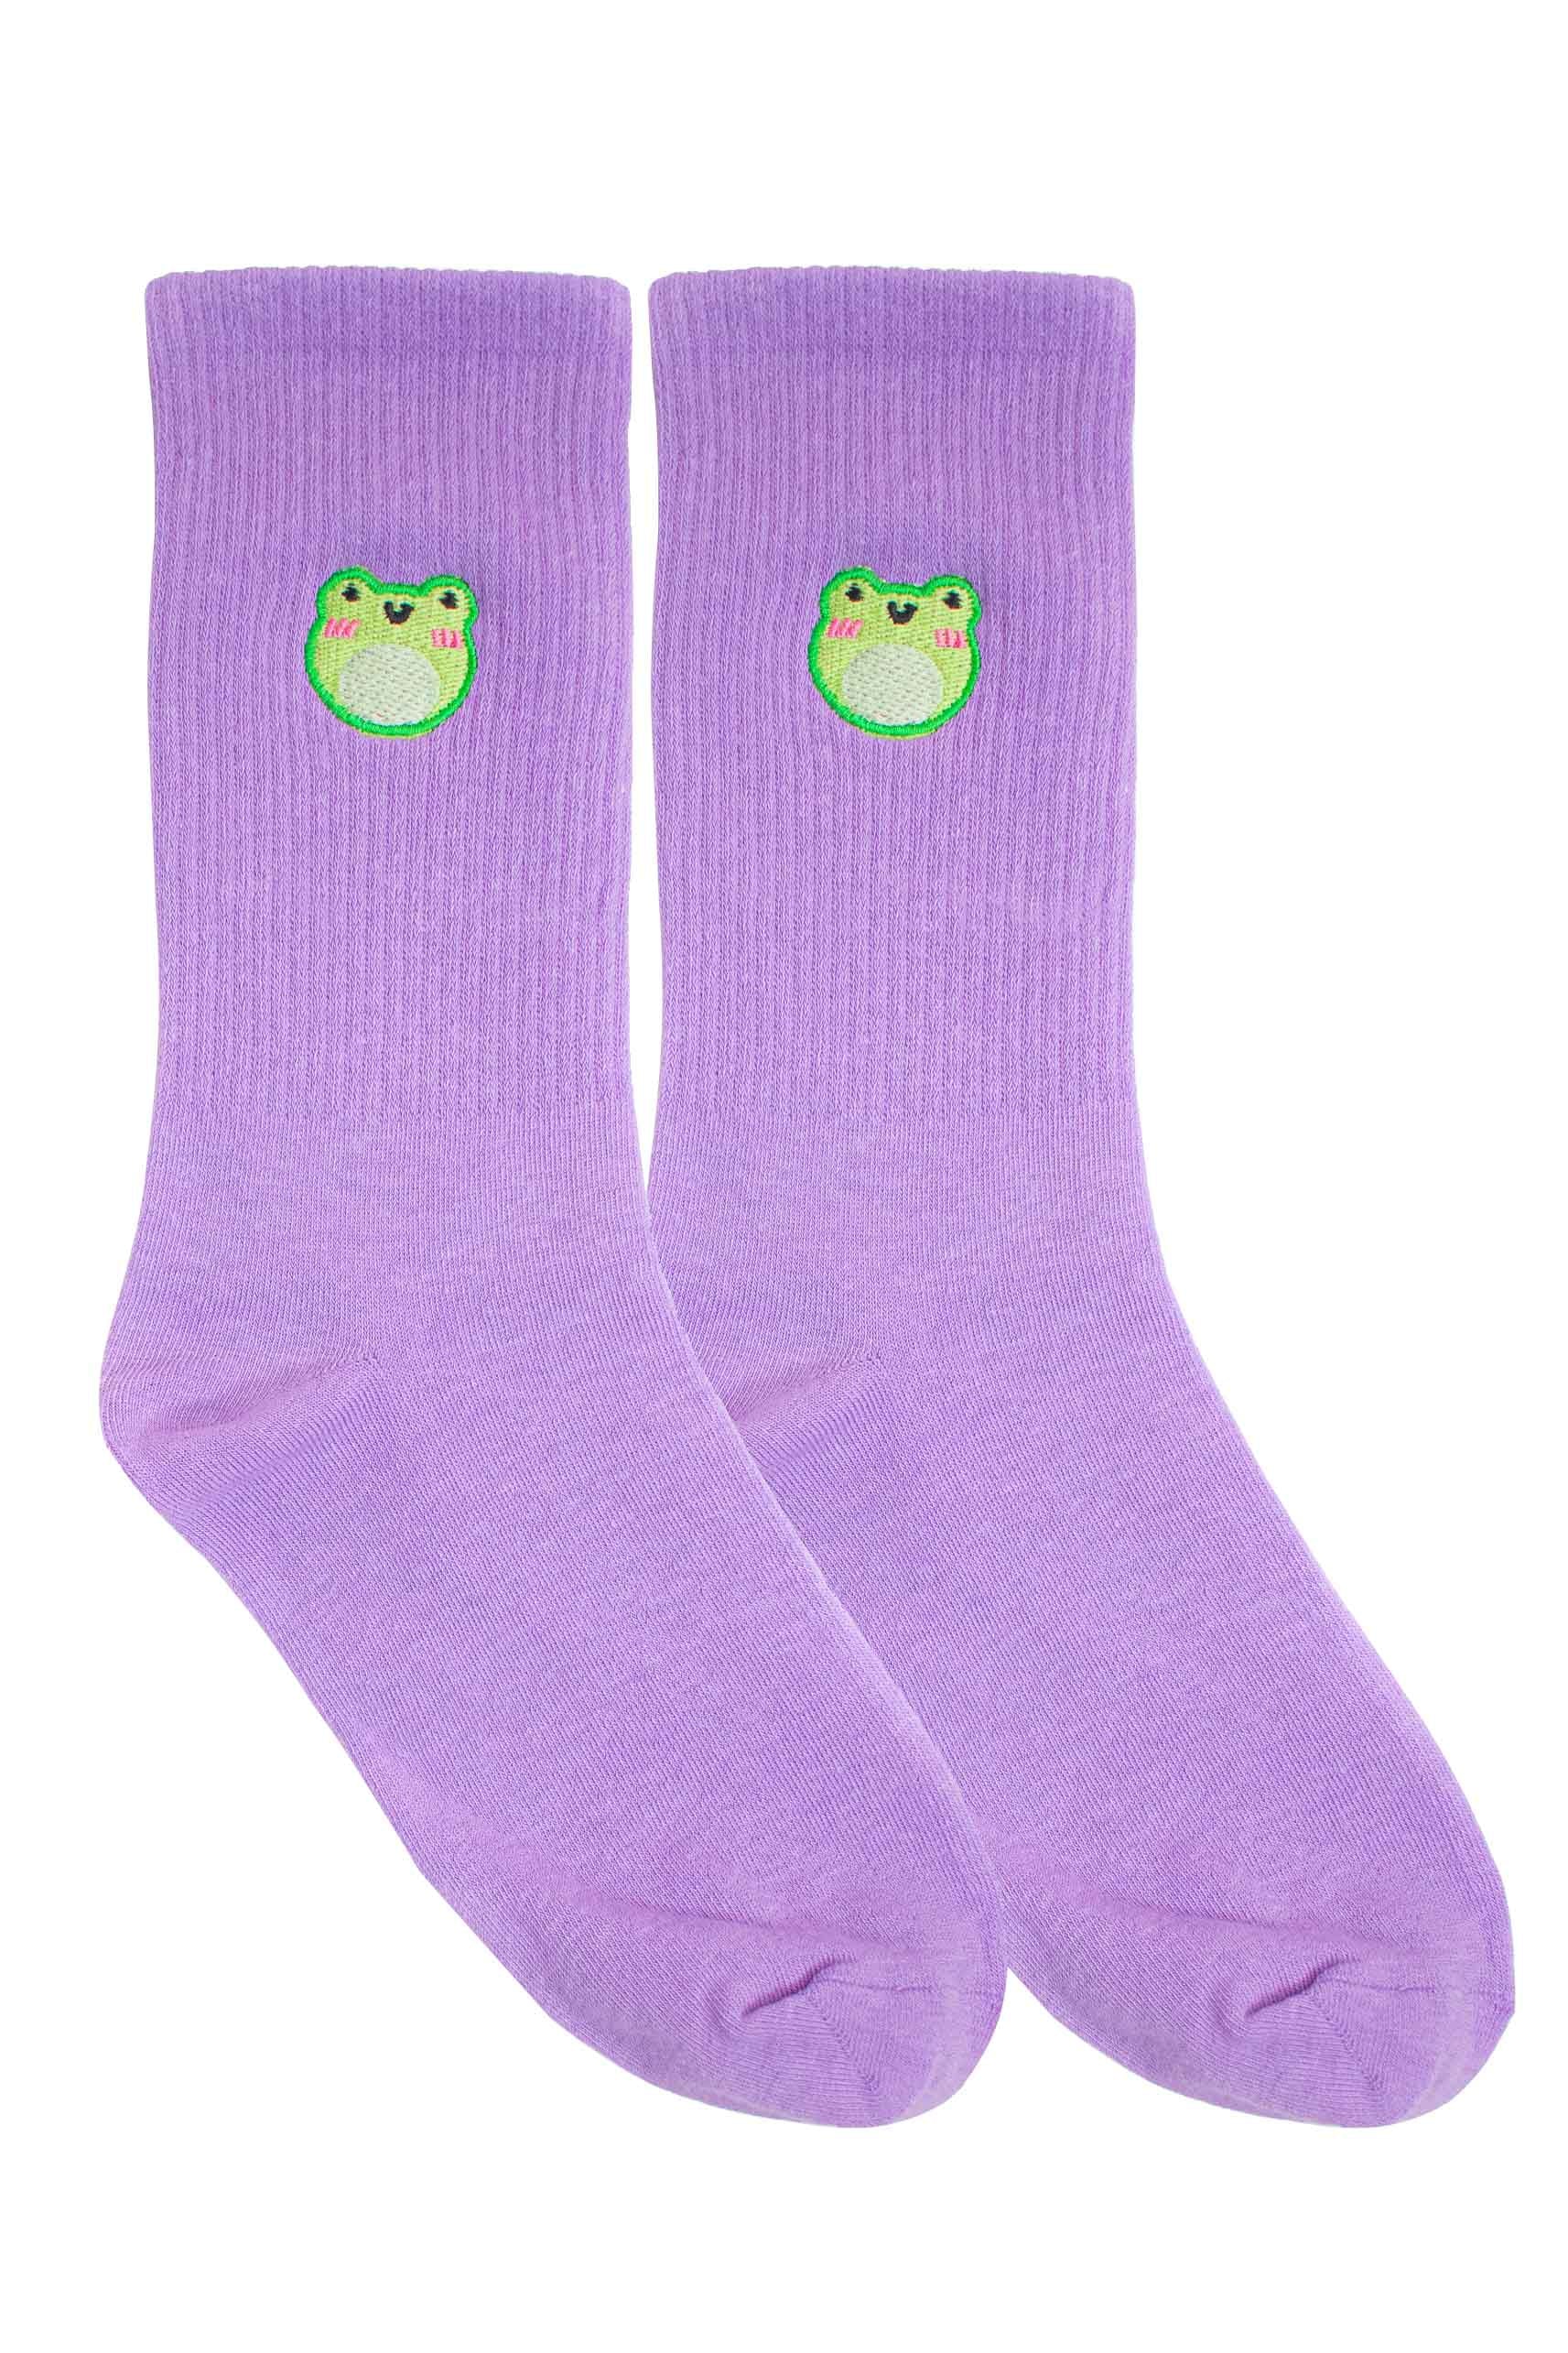 Happy Froggy Embroidered Socks - Momokakkoii